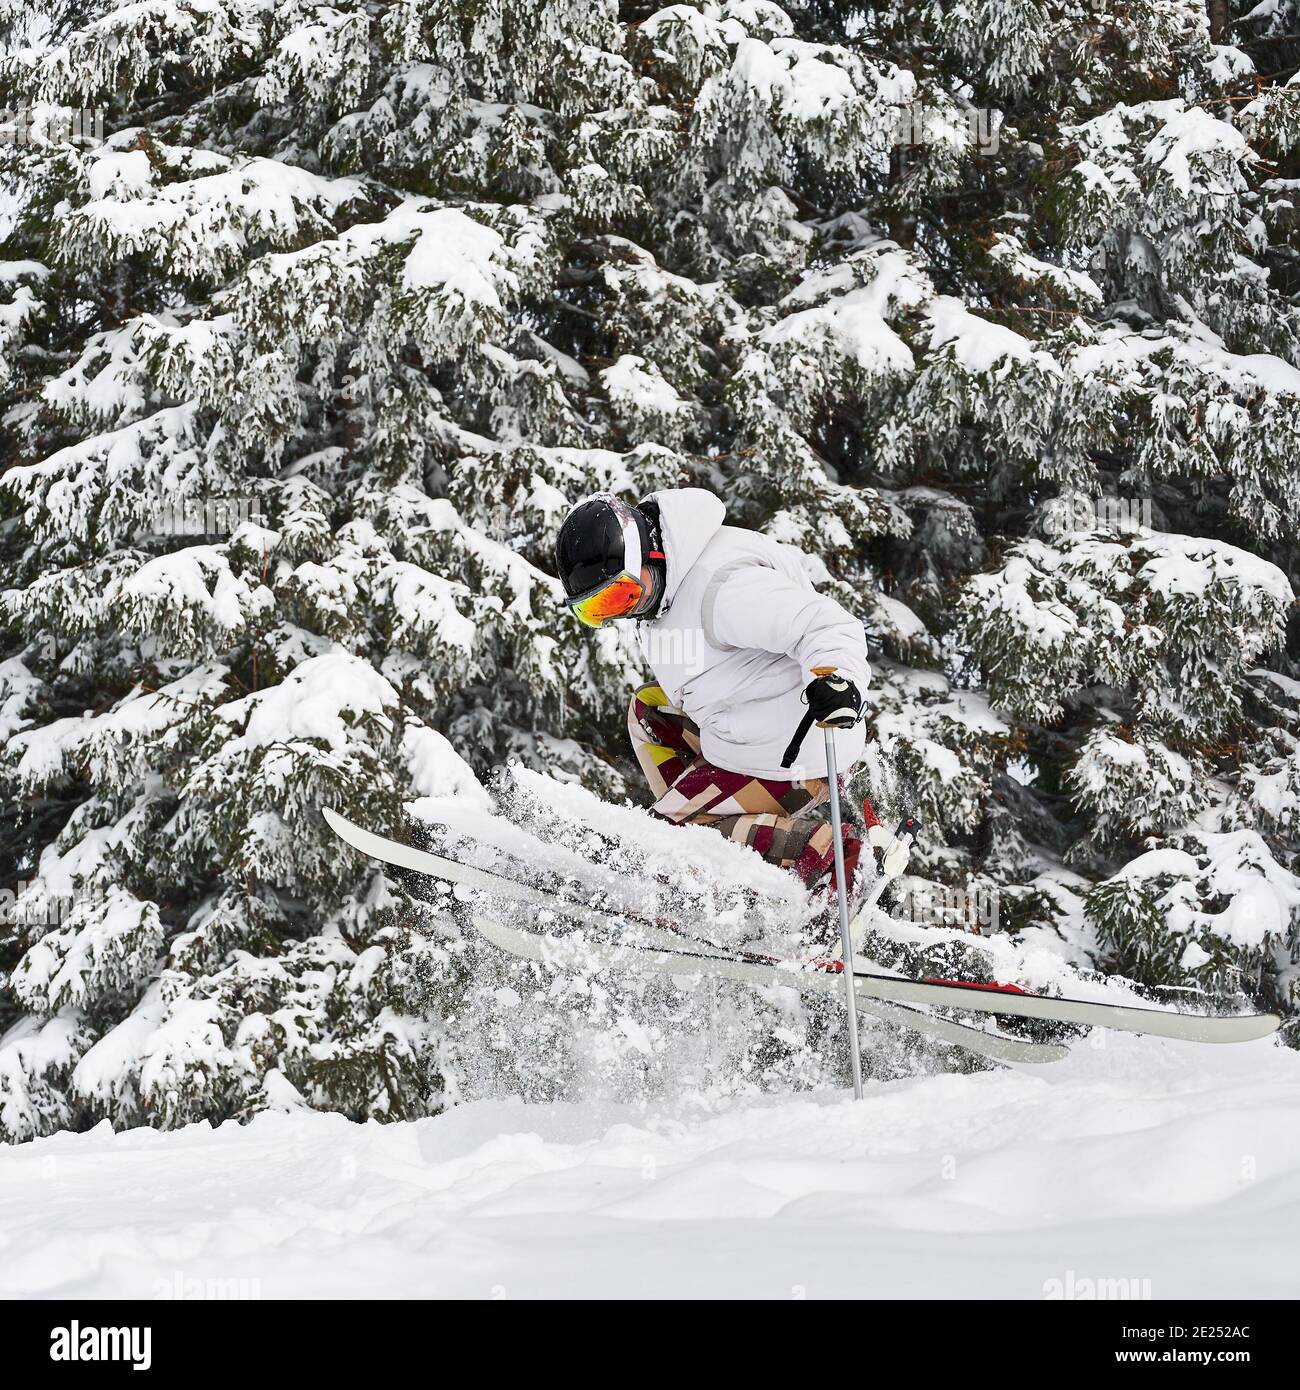 Esquiador masculino esquiando en nieve fresca en polvo con hermosos árboles nevados en el fondo. Hombre freerider en gafas de esquí haciendo saltar mientras se desliza por las pistas cubiertas de nieve. Concepto de deportes de invierno Foto de stock